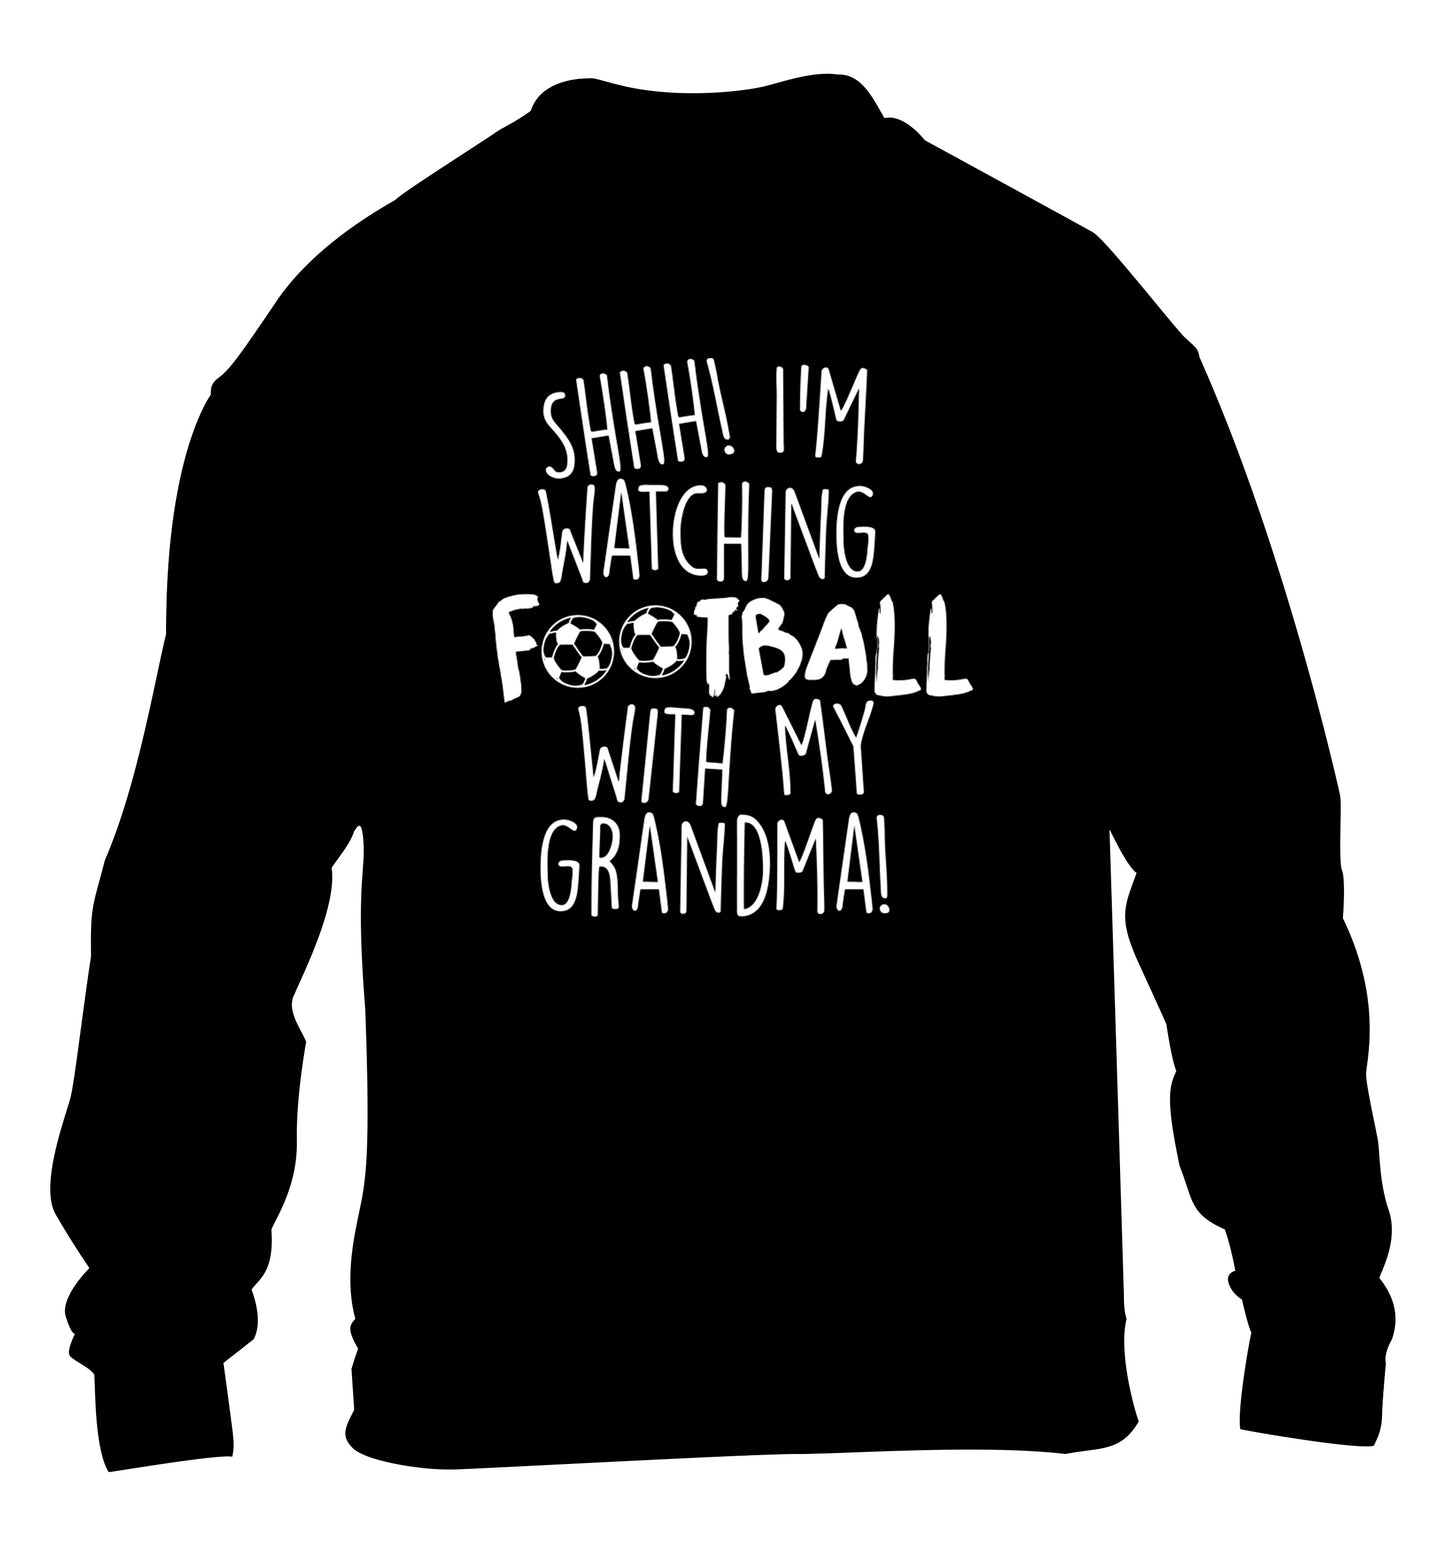 Shhh I'm watching football with my grandma children's black sweater 12-14 Years